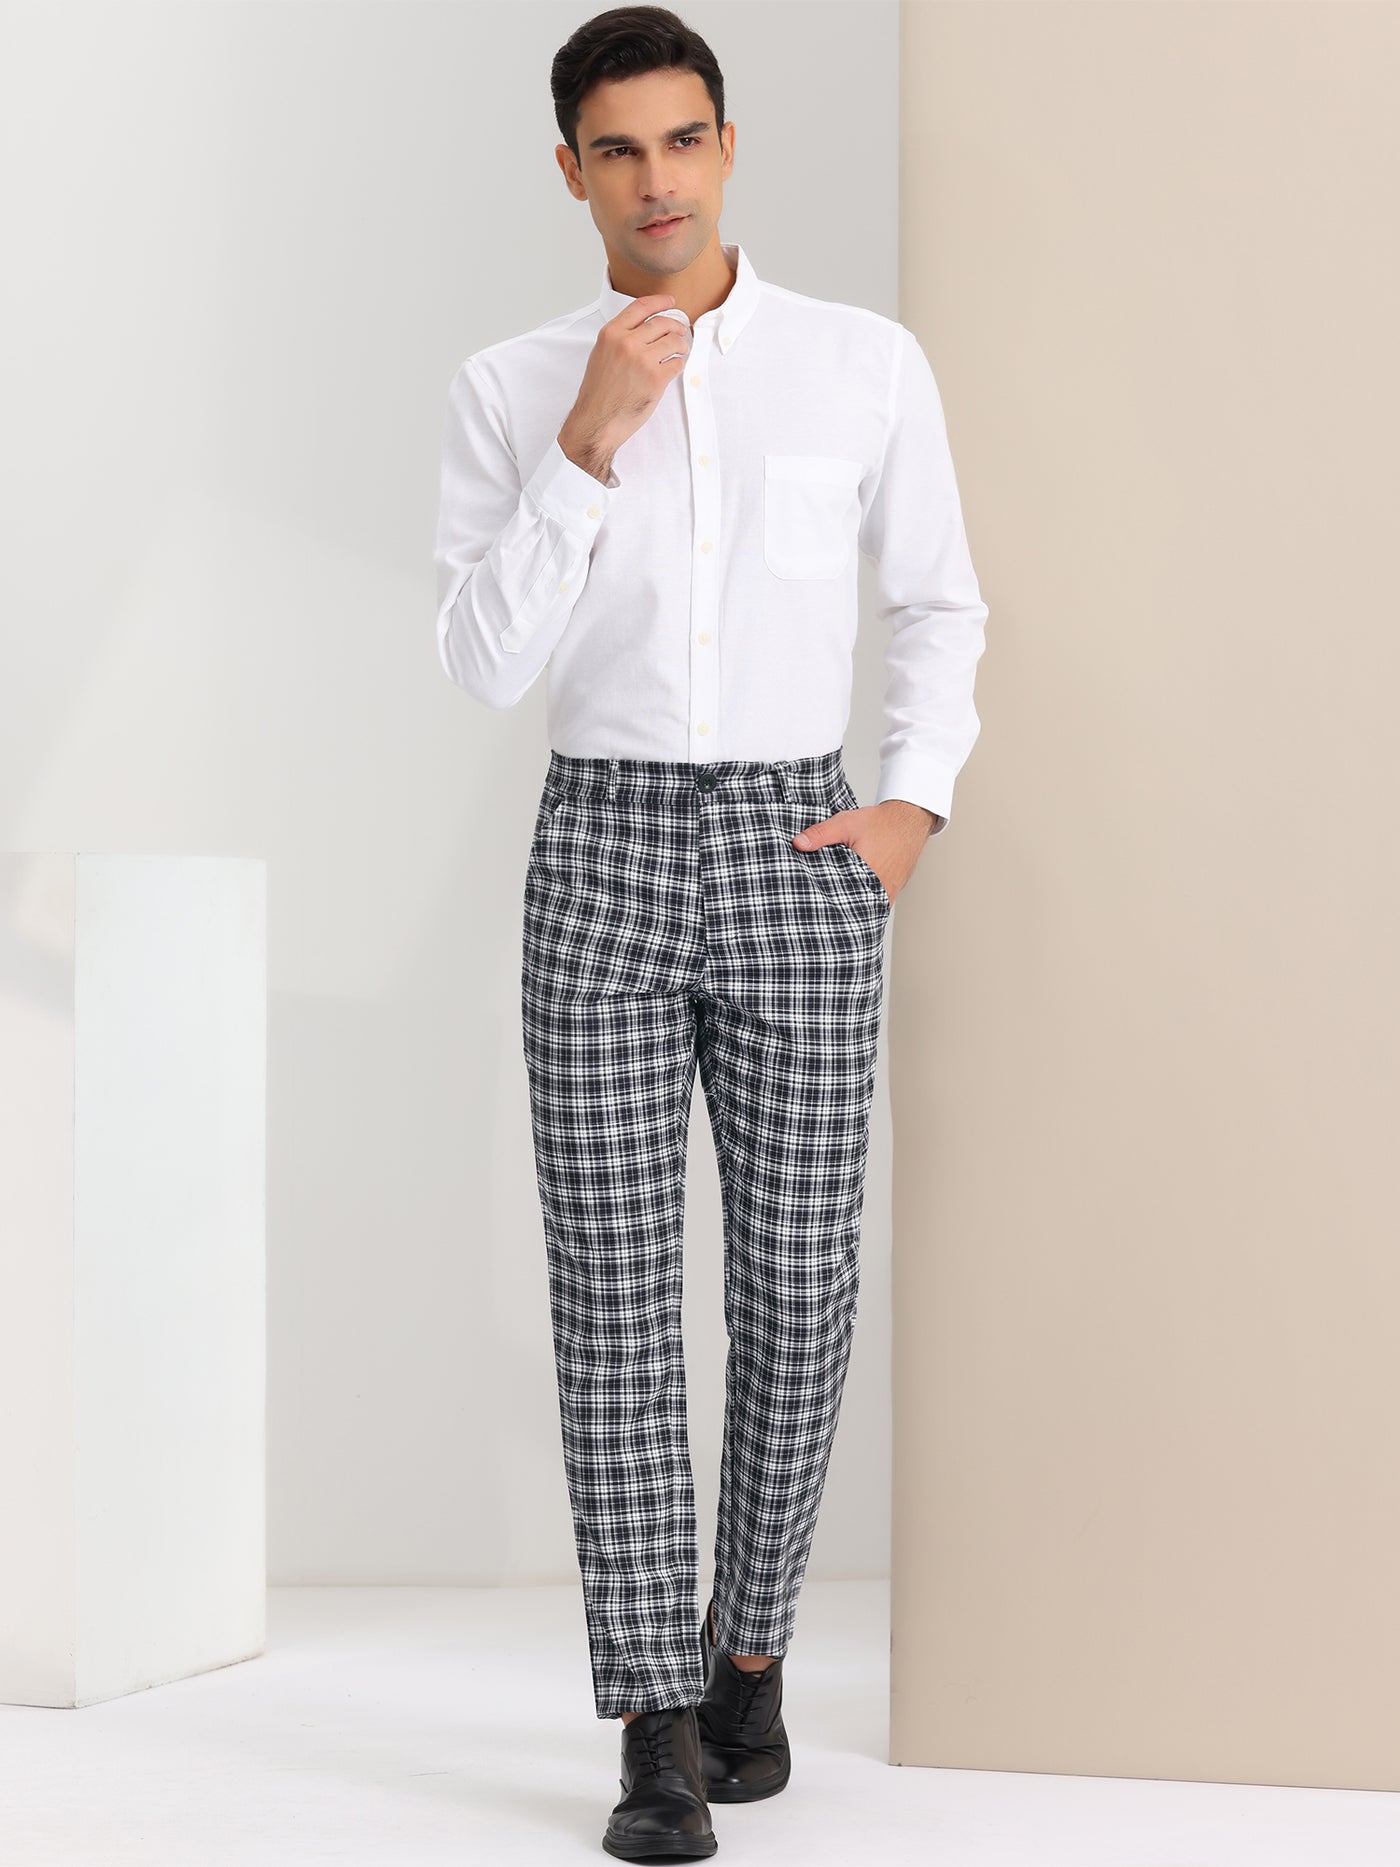 Bublédon Men's Dress Plaid Regular Fit Flat Front Checked Business Suit Pants